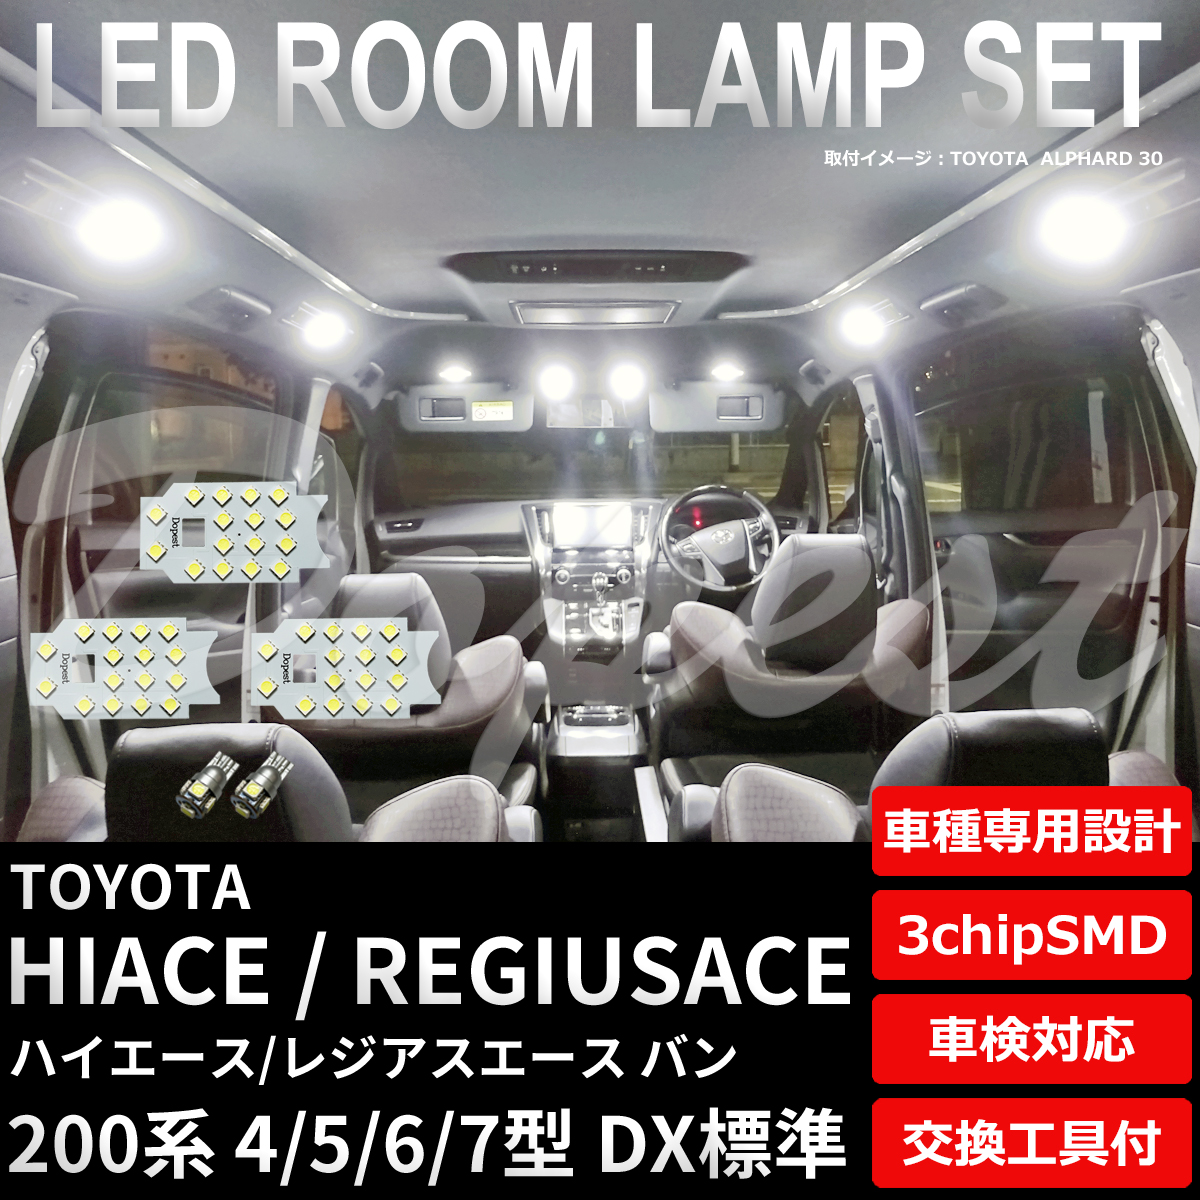 ハイエース LEDルームランプセット 200系 4/5/6/7型 DX標準